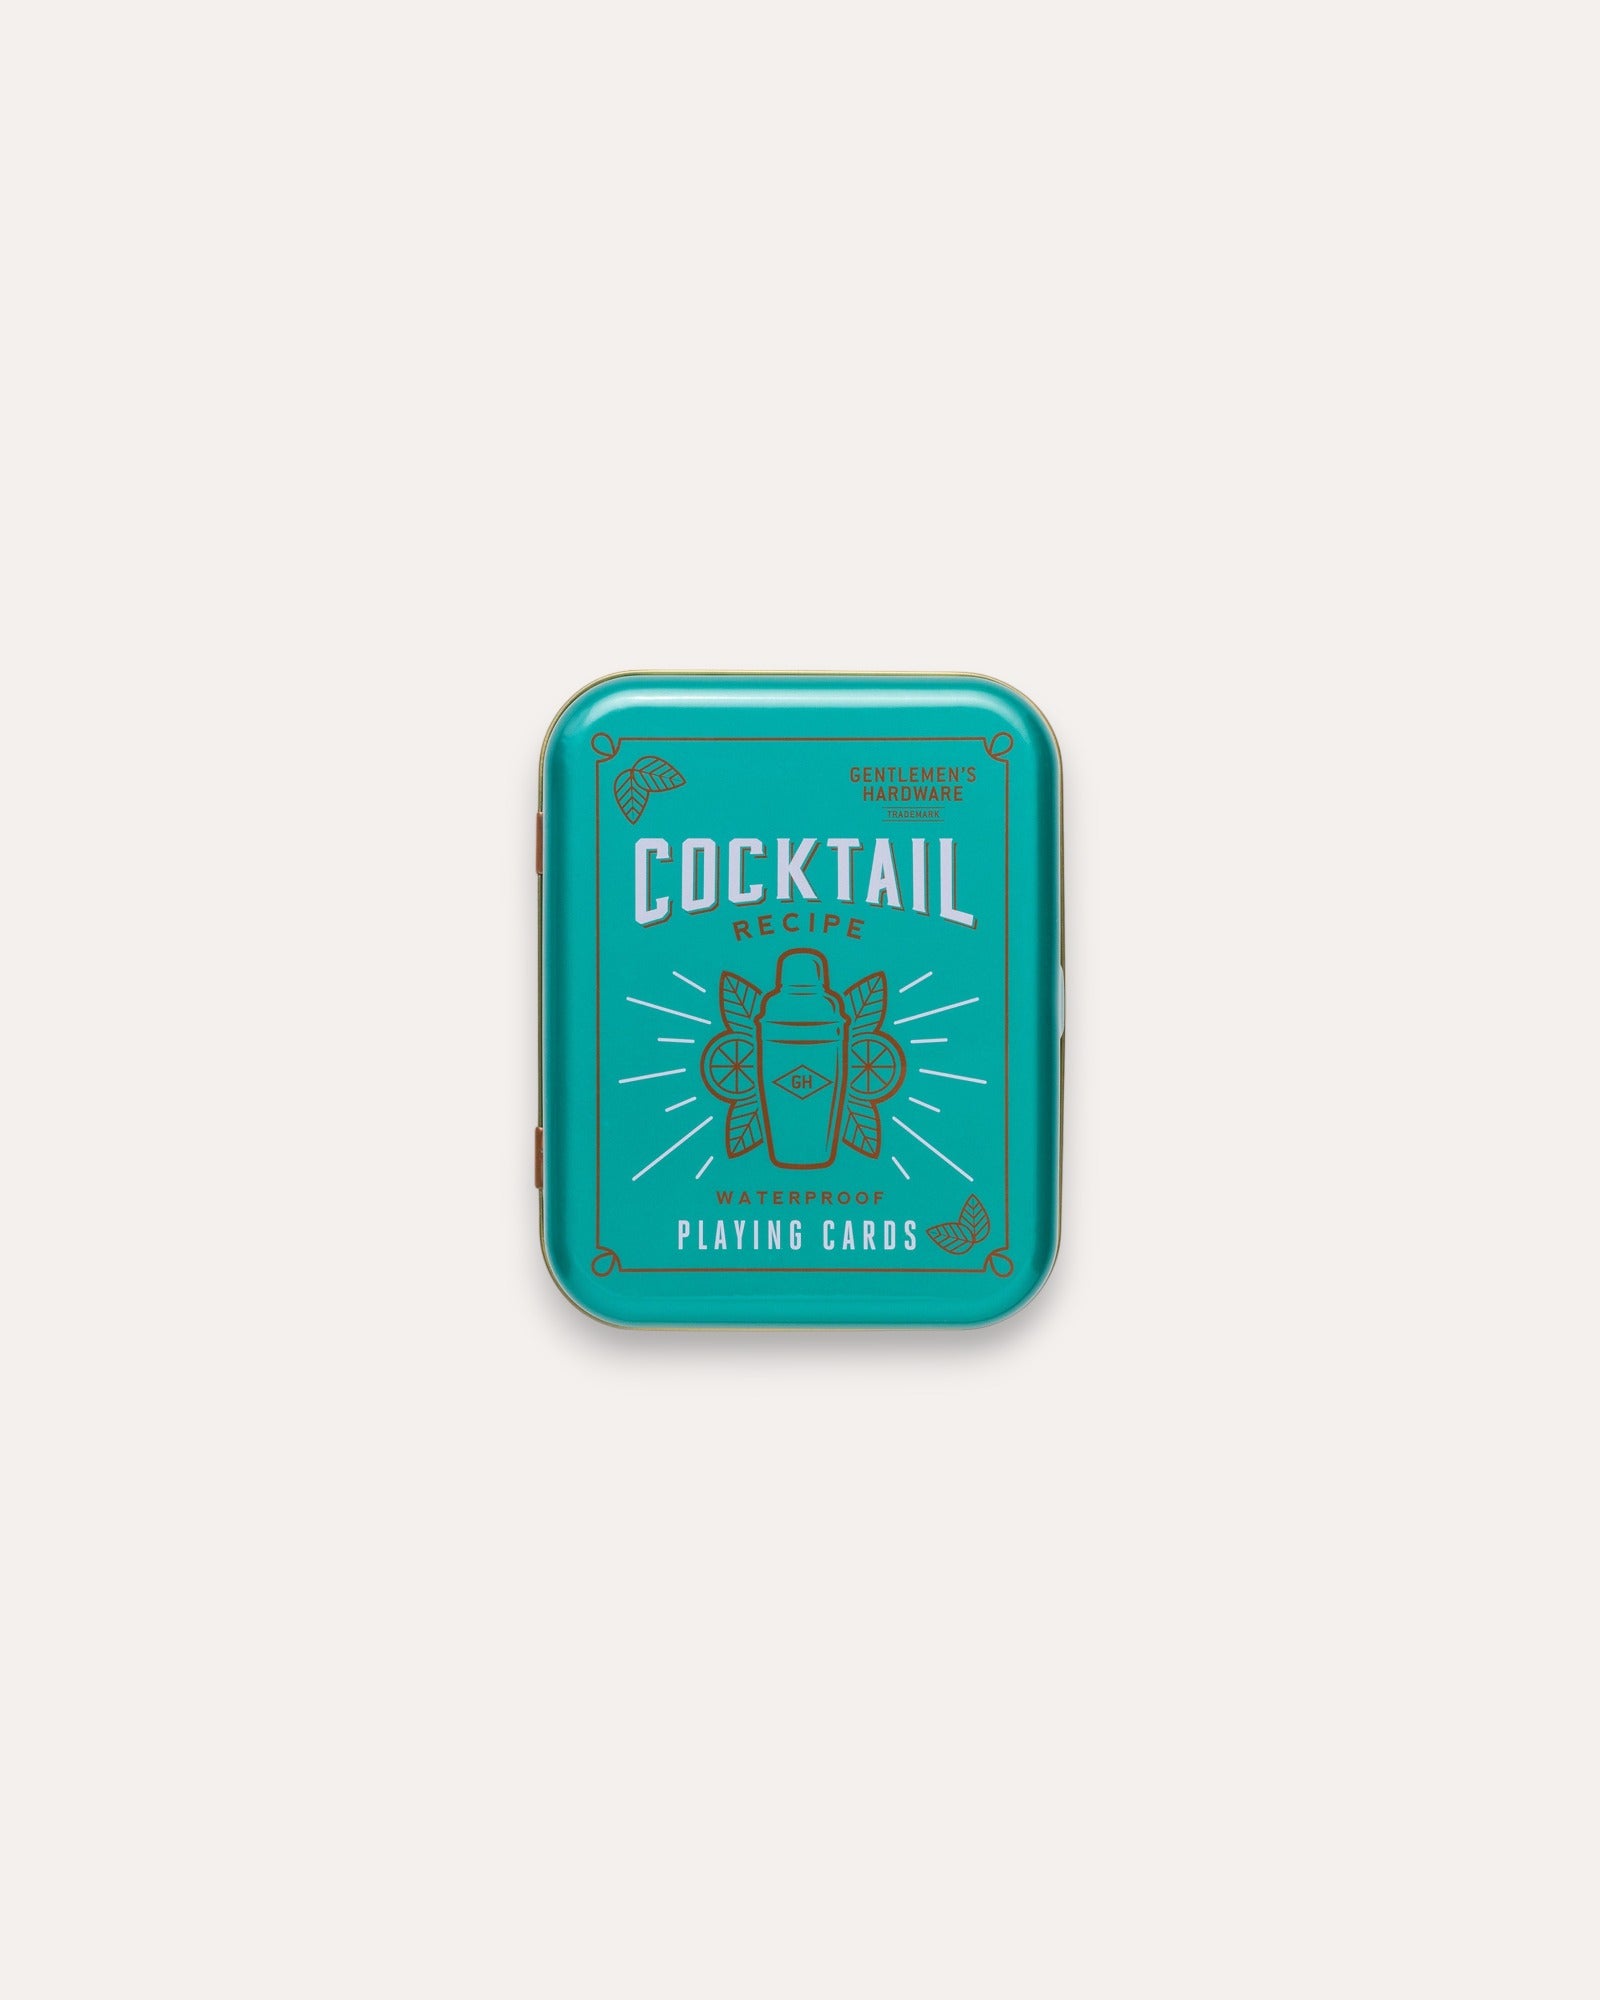 Jeu de cartes cocktail